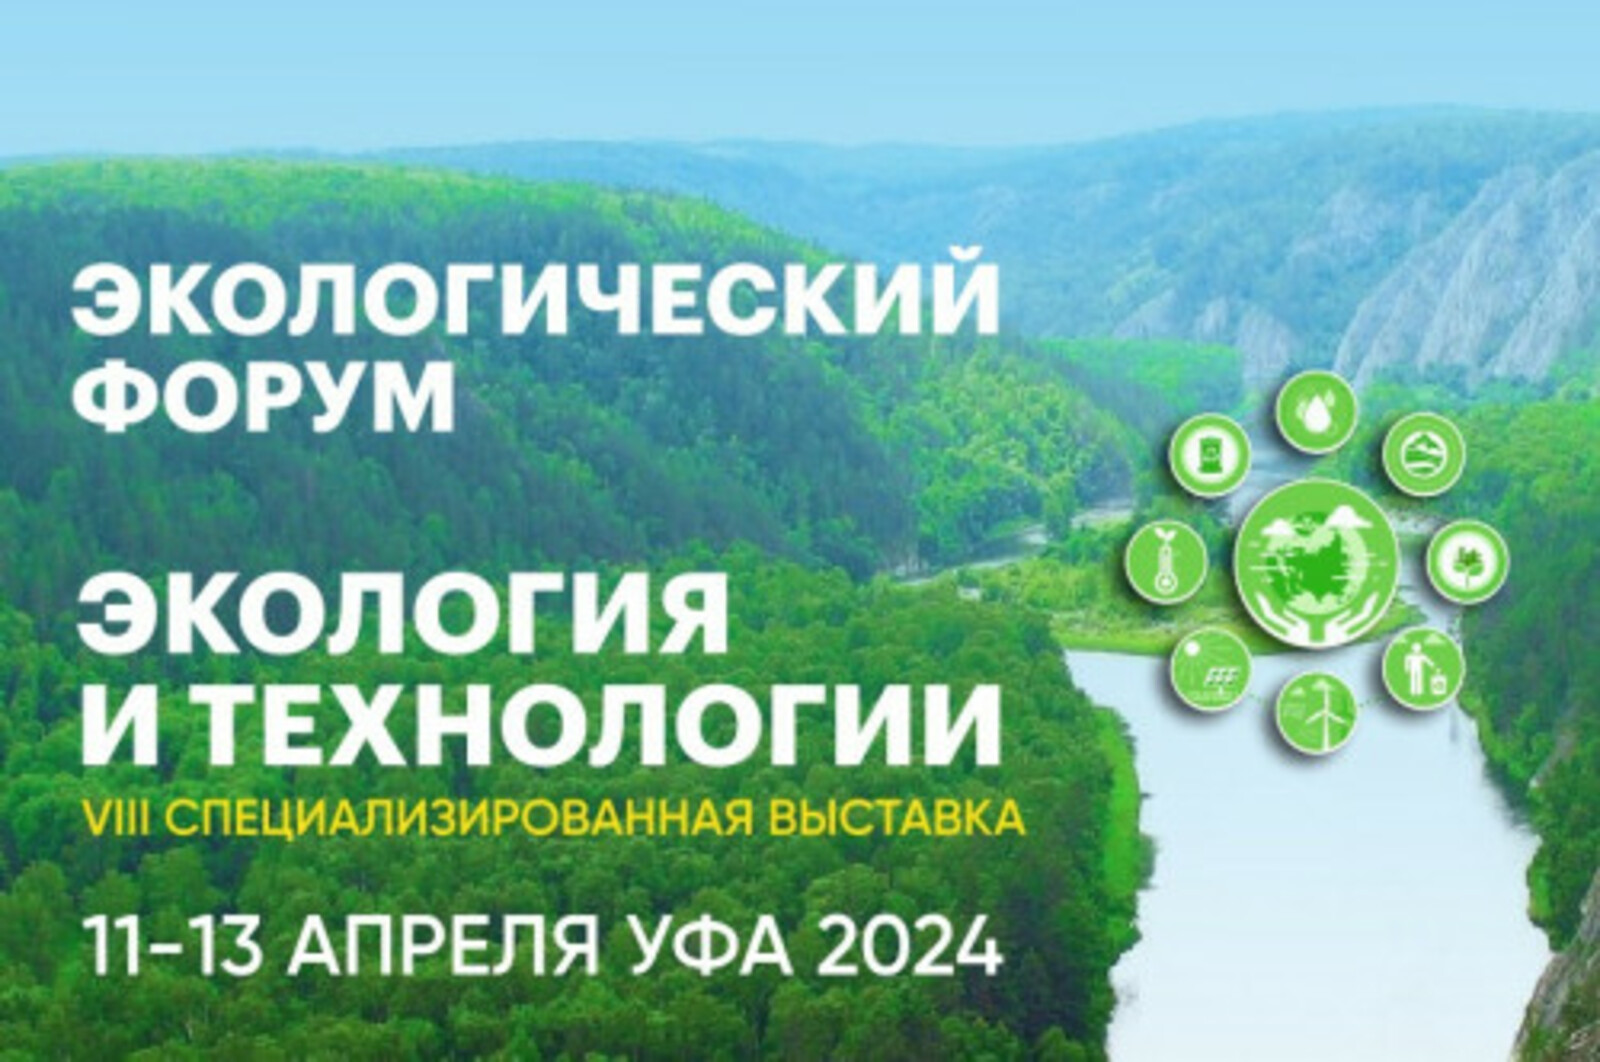 В экологическом форуме в Уфе примут участие представители из 17 регионов России, Казахстана и Беларуси